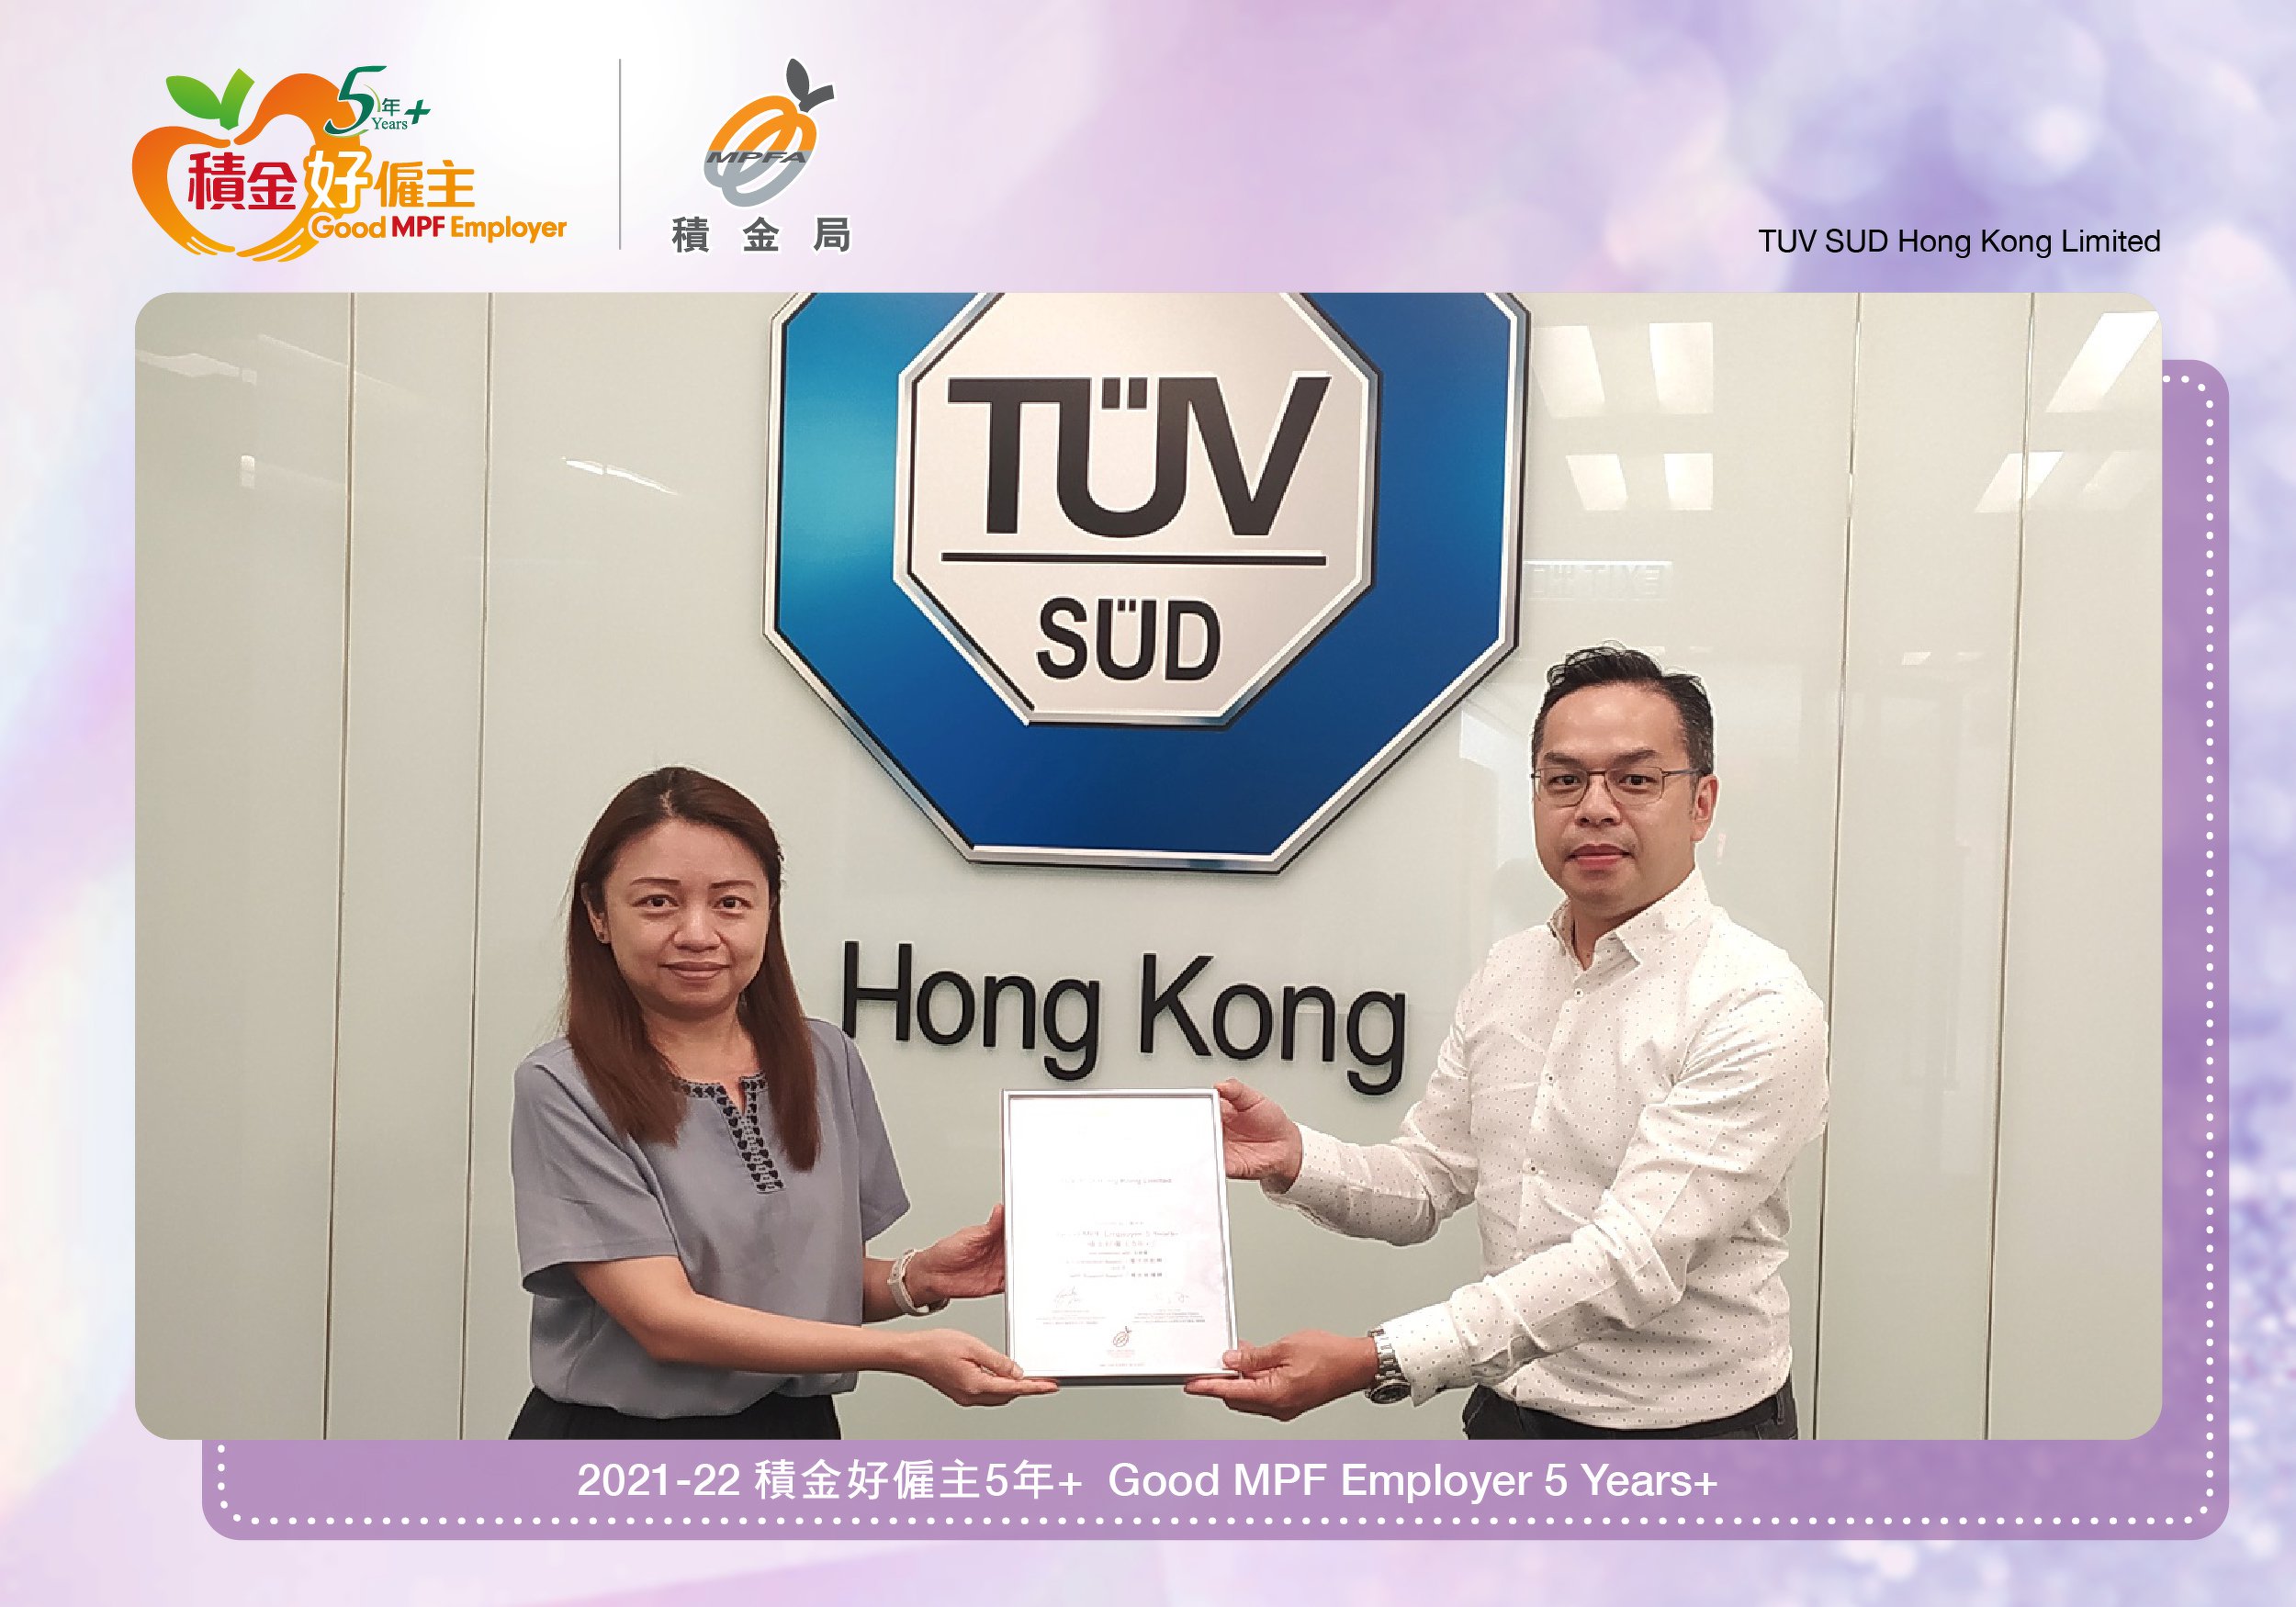 TUV SUD Hong Kong Limited